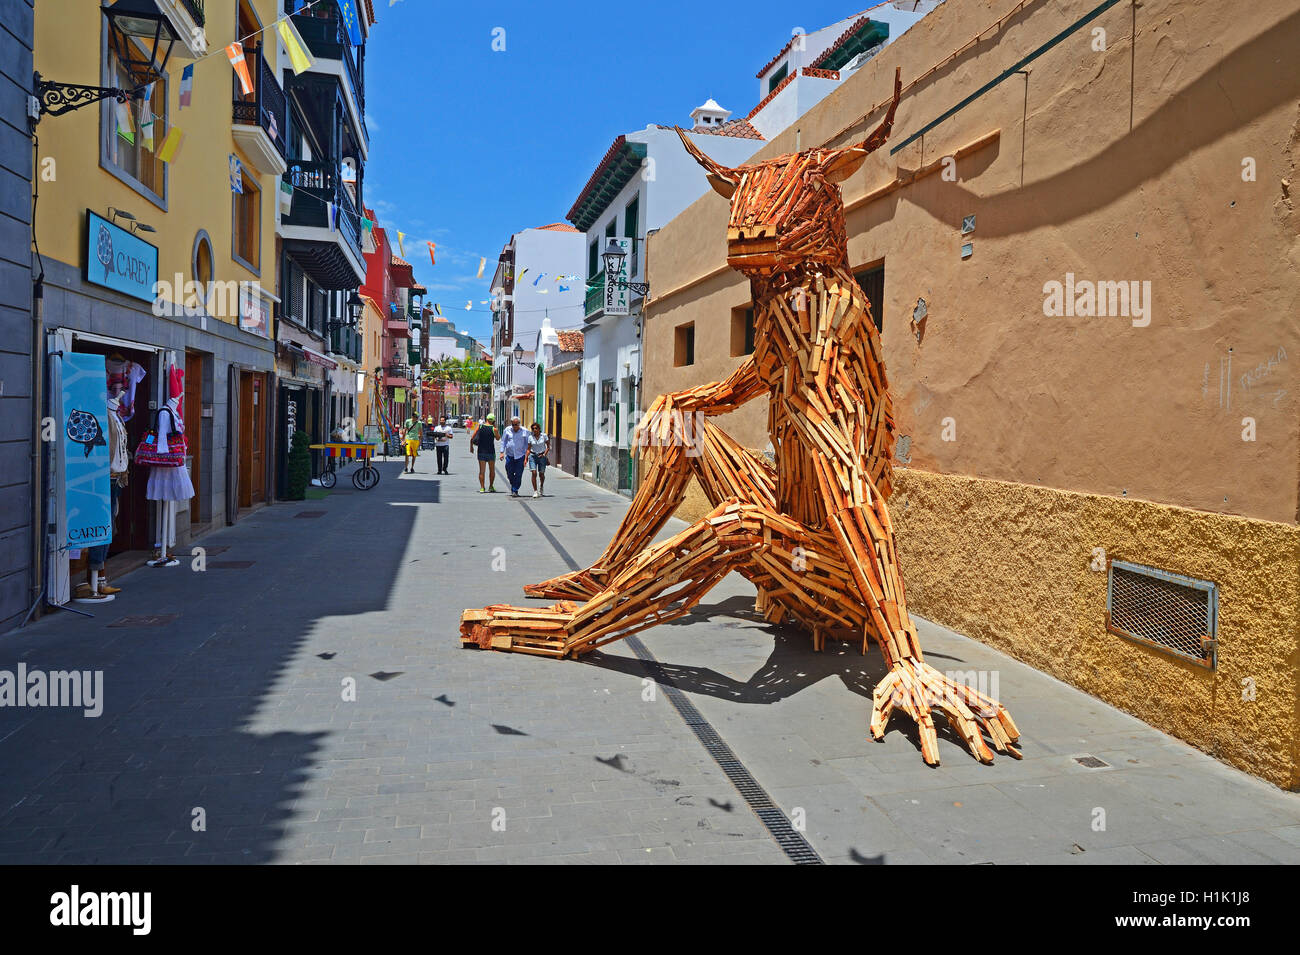 Kunstobjekt in den Gassen in Puerto de la Cruz, Teneriffa, Kanarische Inseln, Spanien Stock Photo